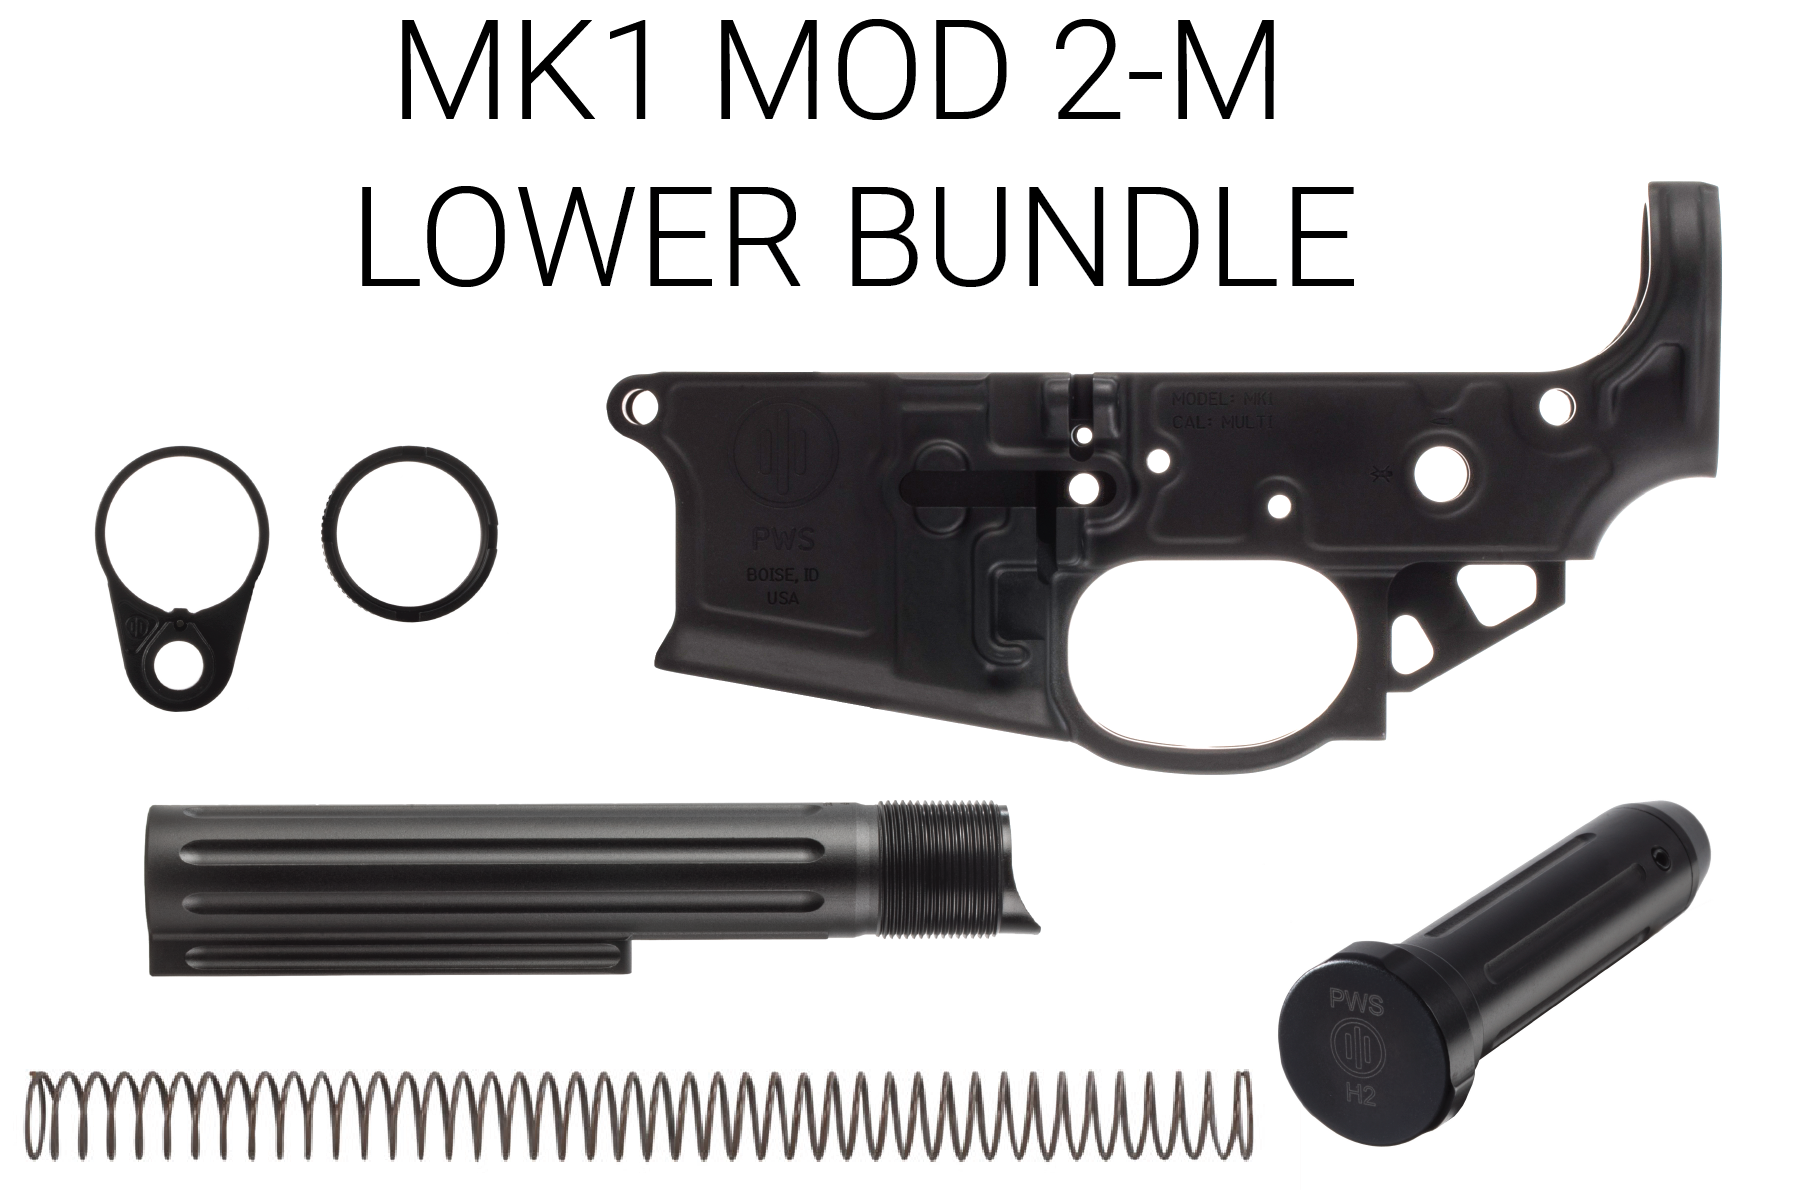 PWS Bundles of Love MK1 MOD 2-M Lower Bundle - $249.95